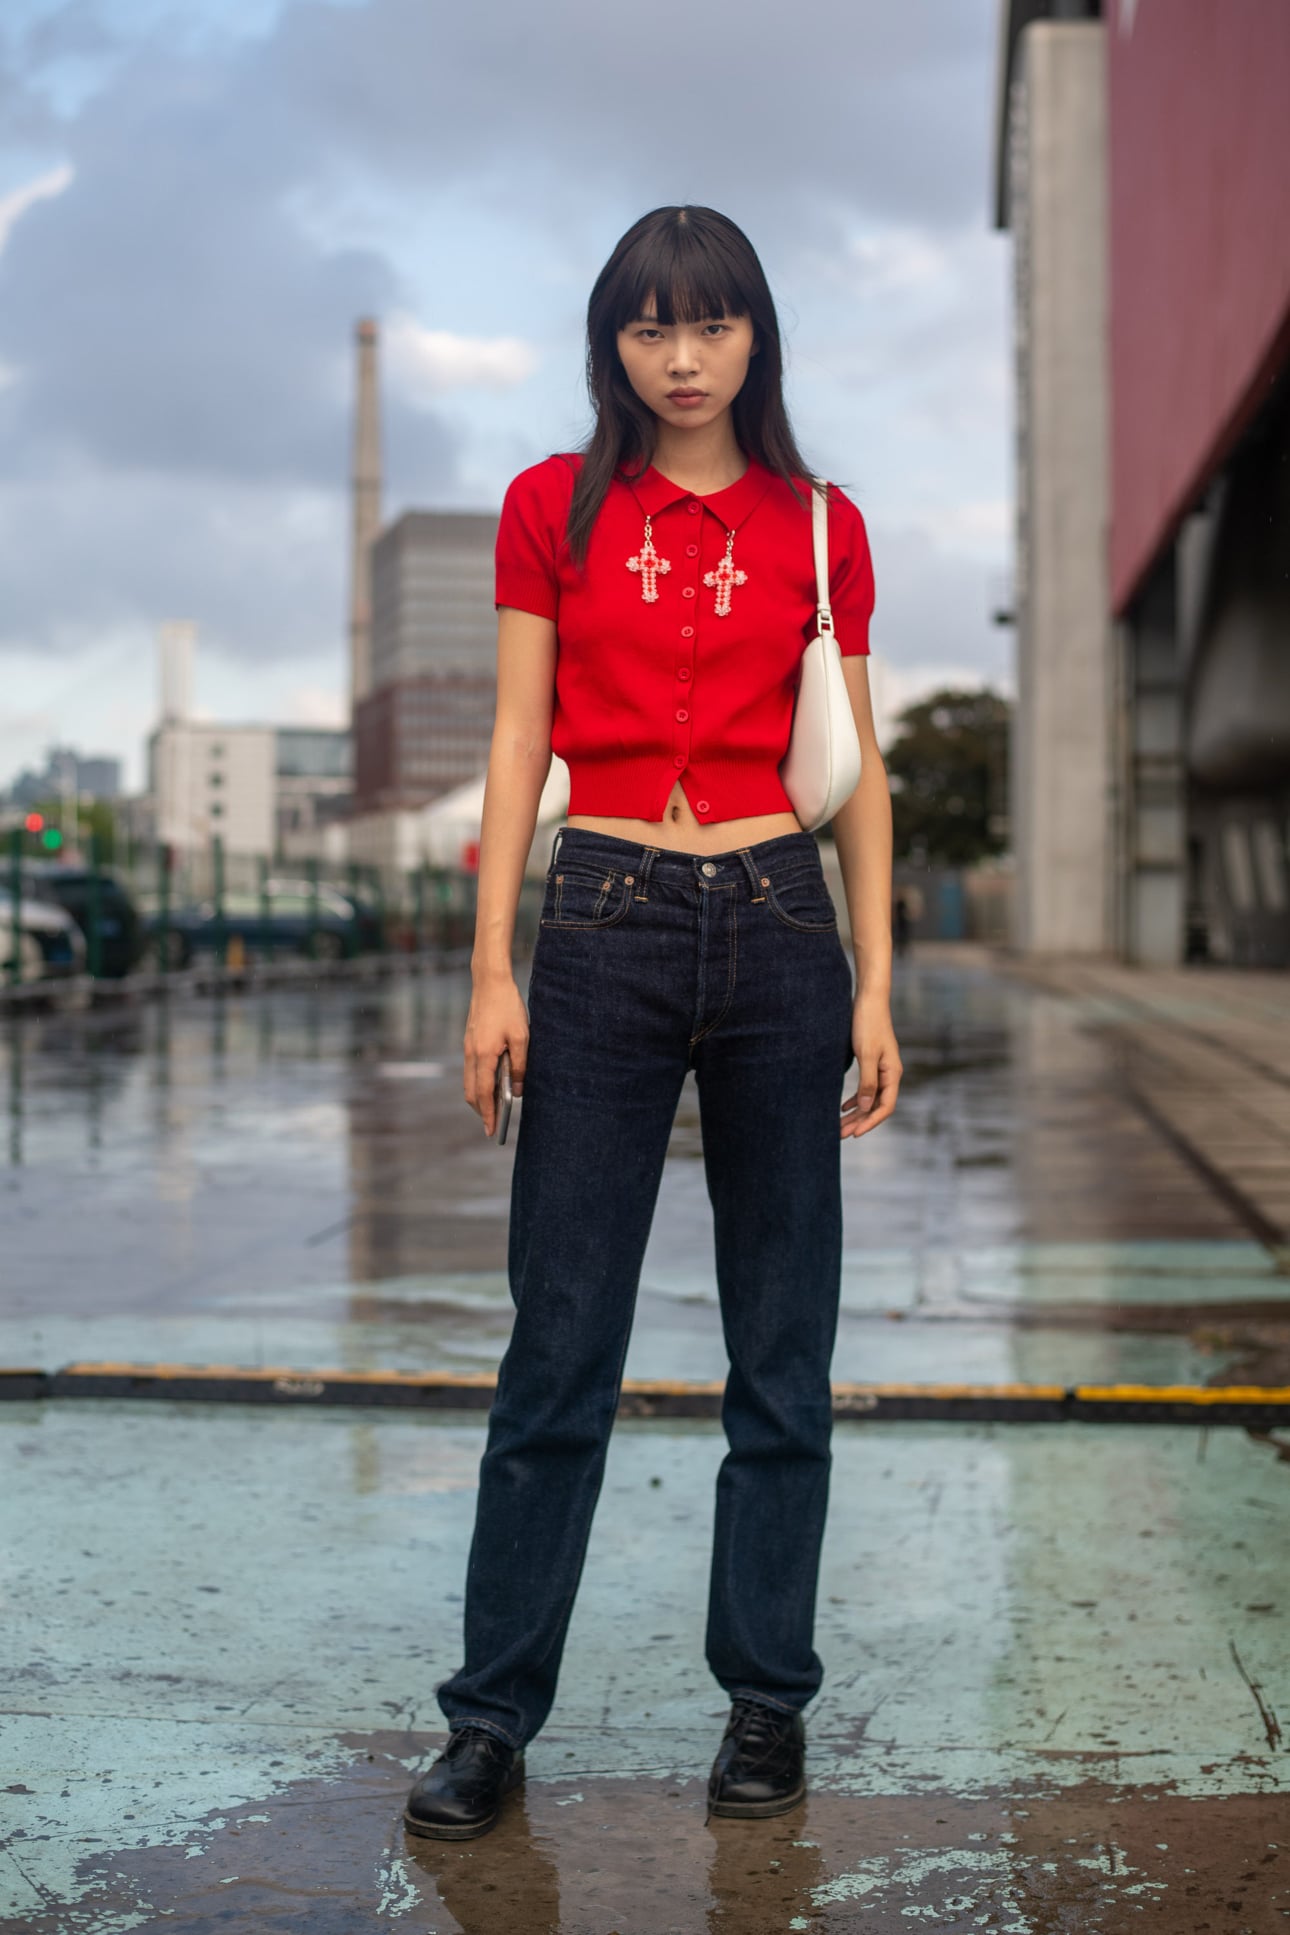 Quần jeans cạp cao và cardigan croptop sắc đỏ, đậm chất Trung Hoa, cô gái ăn bận đơn giản nhưng vẫn cực kỳ thu hút vì vóc dáng  chuẩn.